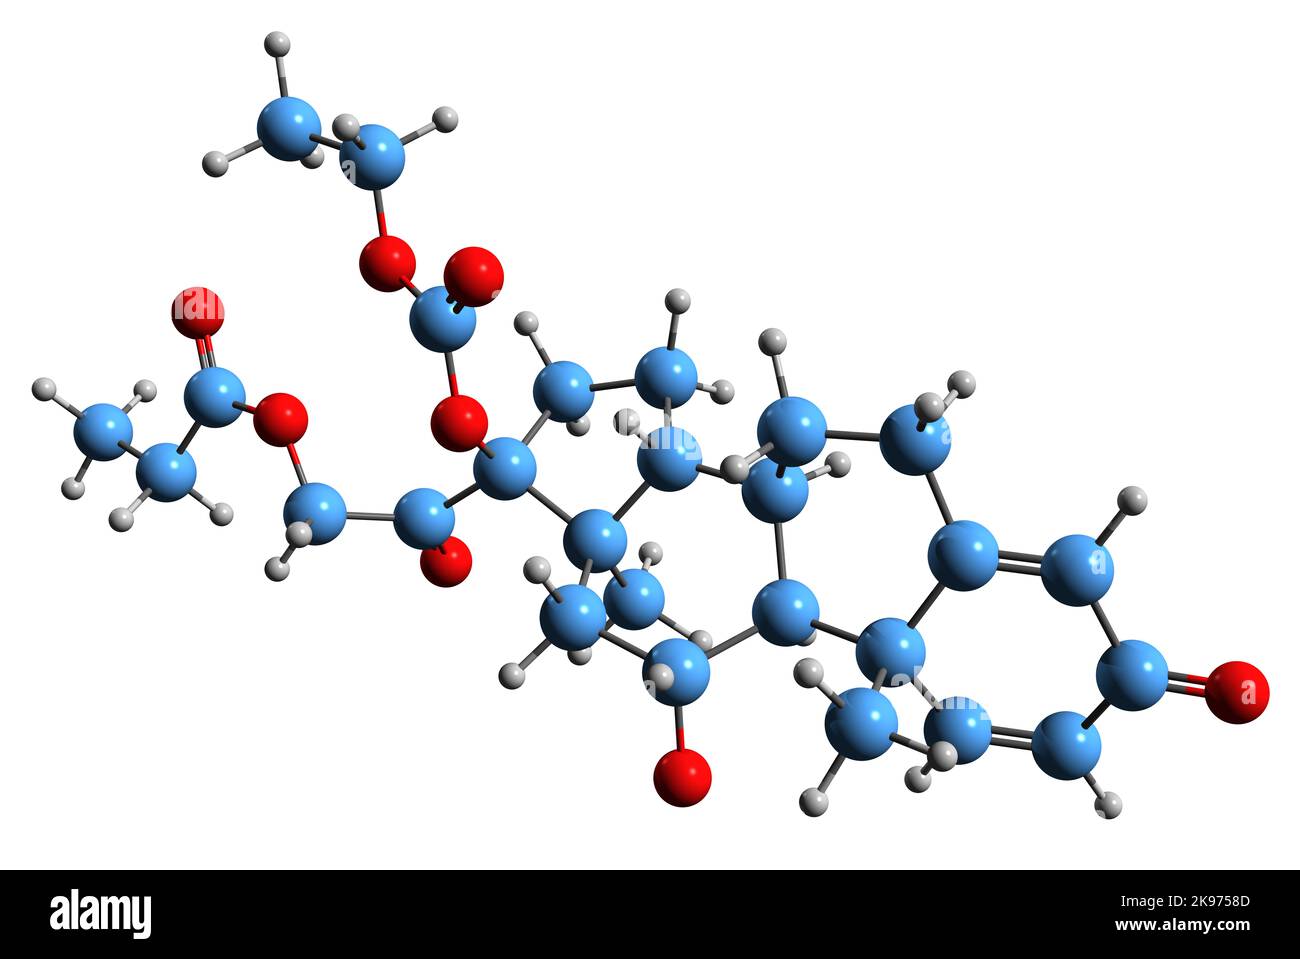 3D Bild der Skelettformel von Prednicarbat - molekularchemische Struktur eines topischen Kortikosteroid-Medikaments auf weißem Hintergrund isoliert Stockfoto